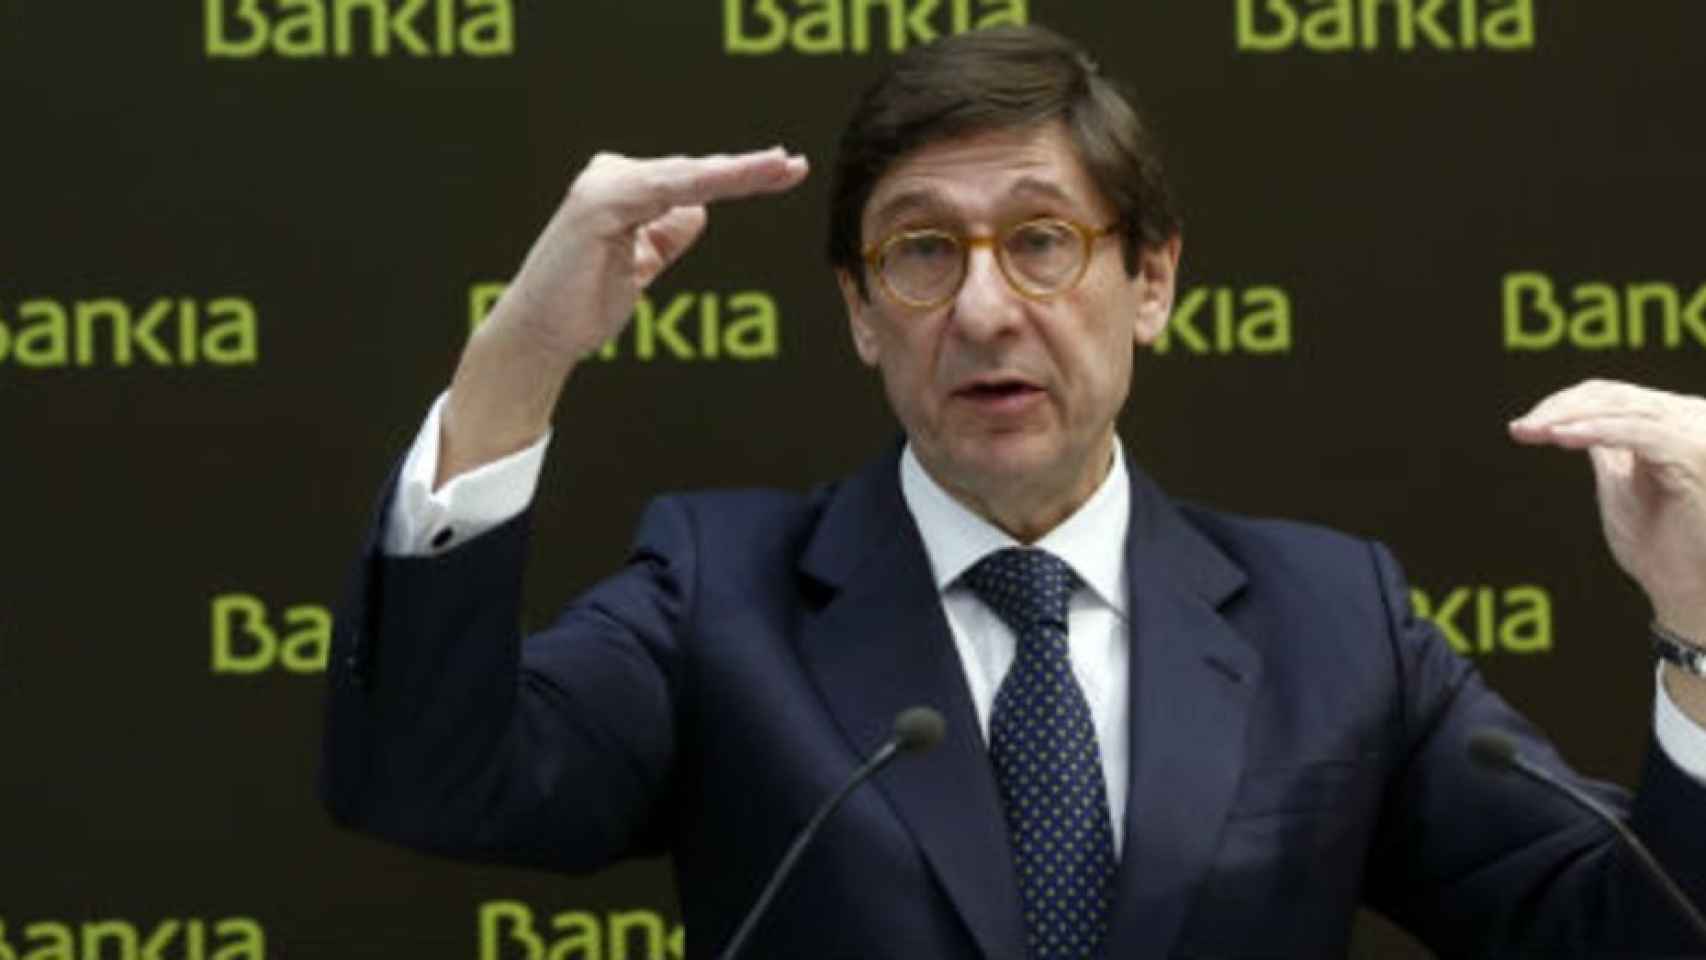 Los bajistas superan el 21% en Dia y escalan a máximos en Bankia